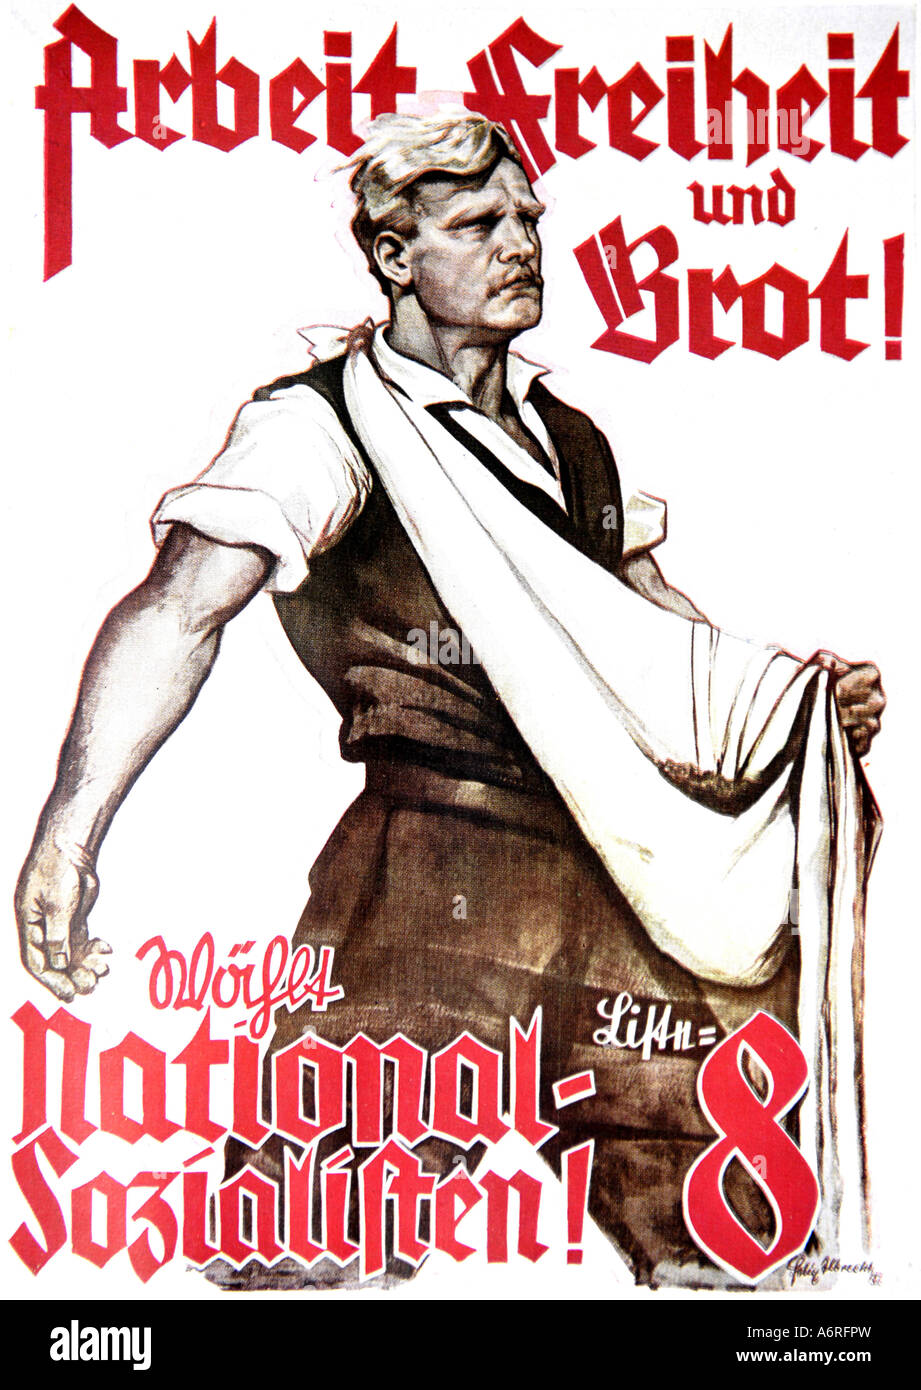 Arbeit Freiheit und brot poster rouge blanc noir le nazisme national-socialisme sozialisten1933 1945 L'histoire de l'Allemagne fasciste du patrimoine Banque D'Images